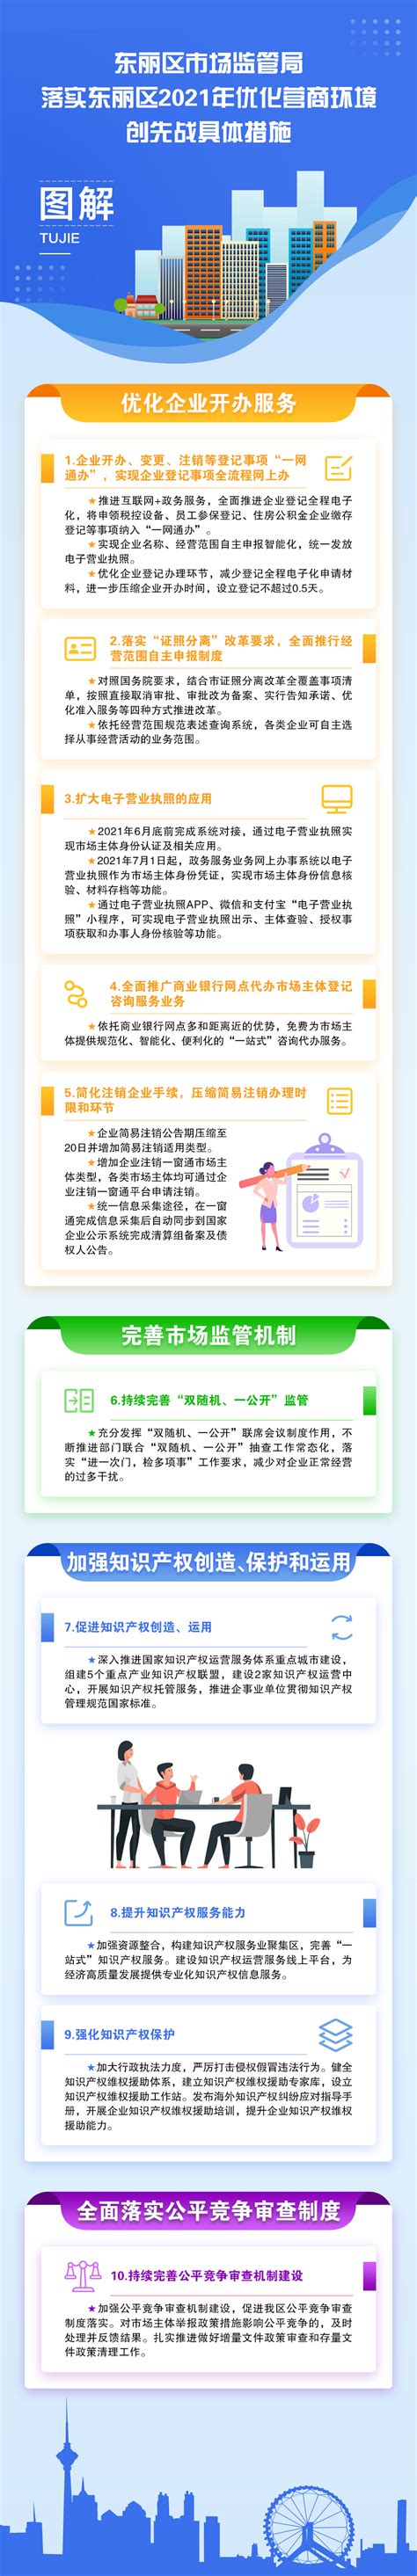 十五条措施服务保障营商环境提质---四川日报电子版